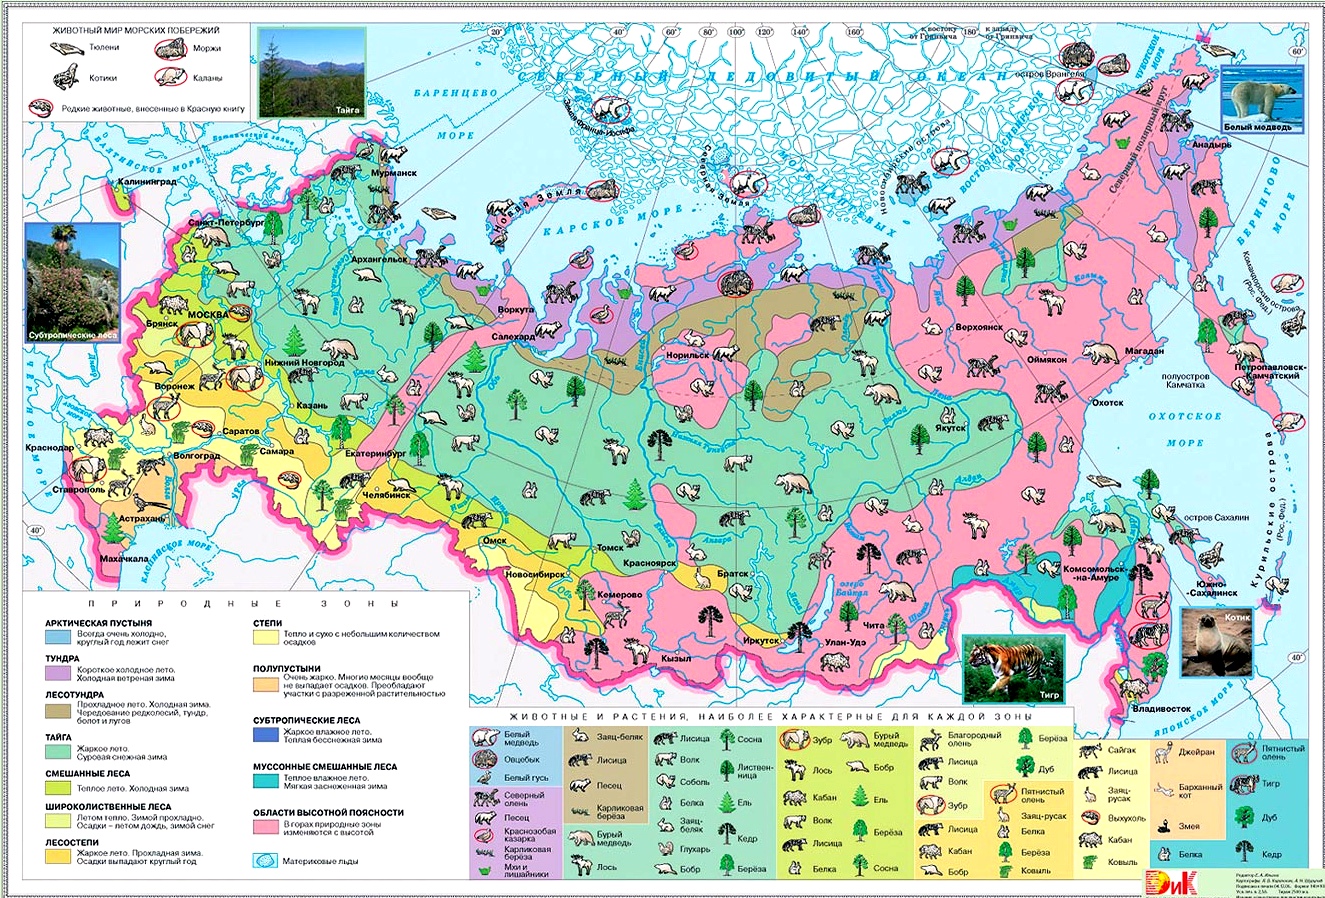 Растительный и животный мир России